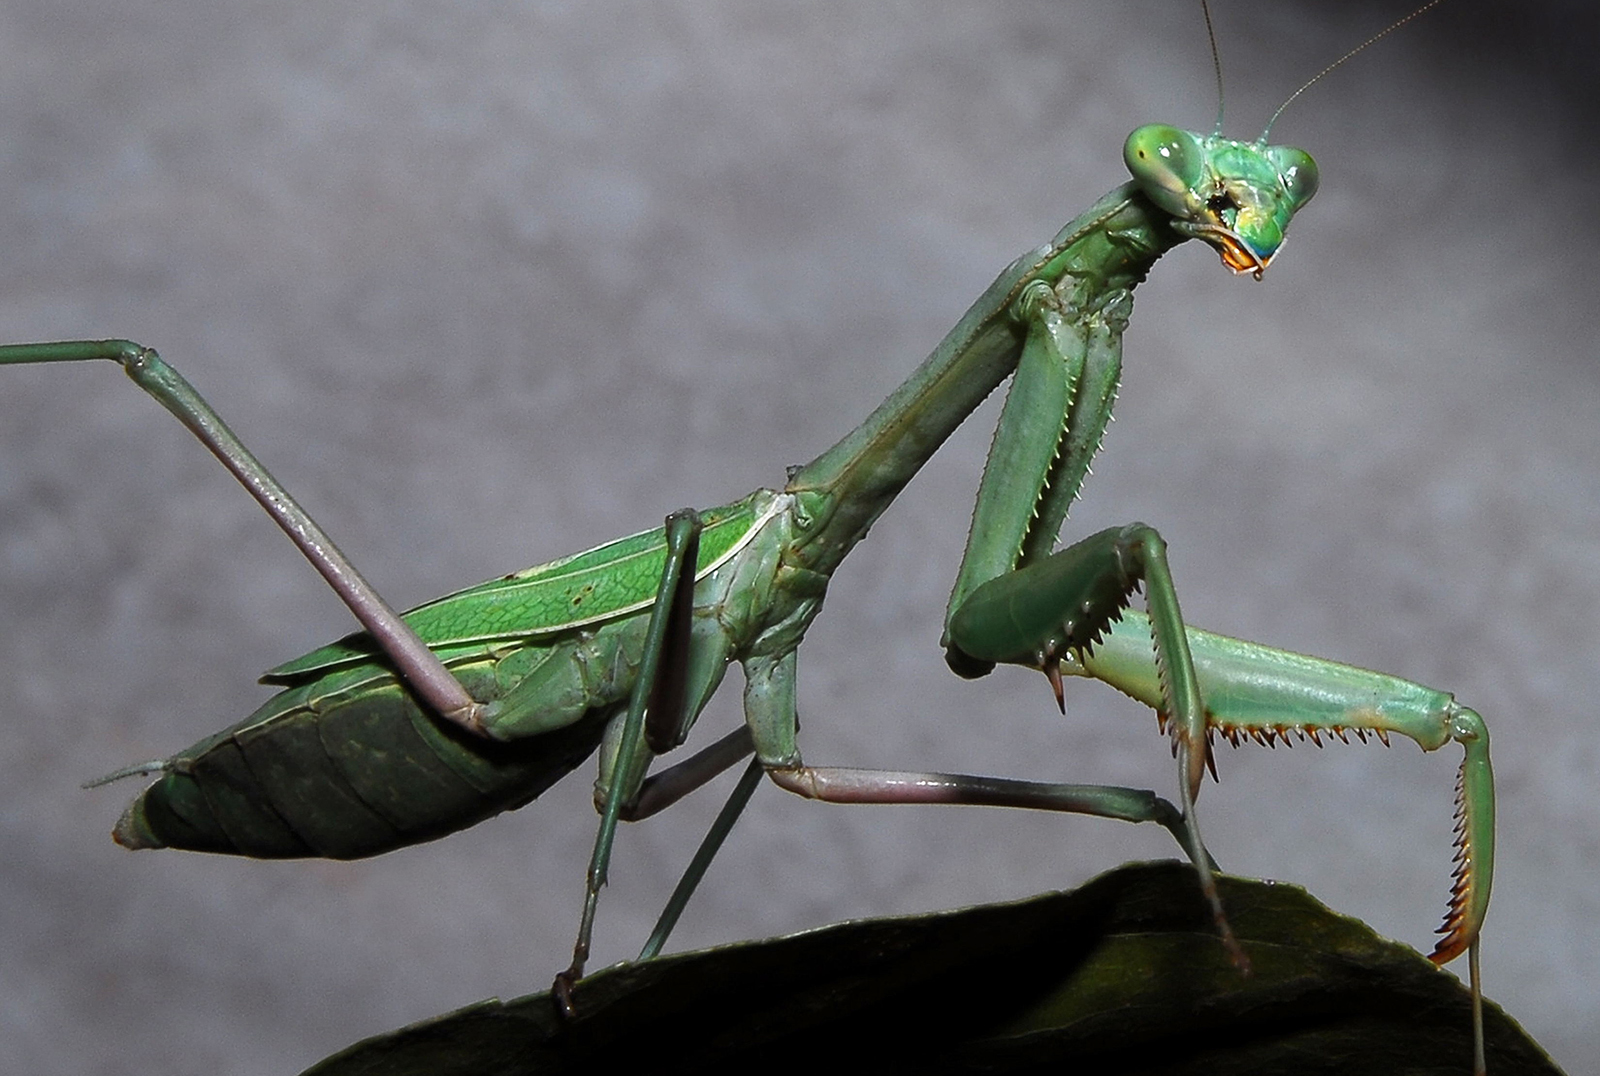 Cute Praying mantis